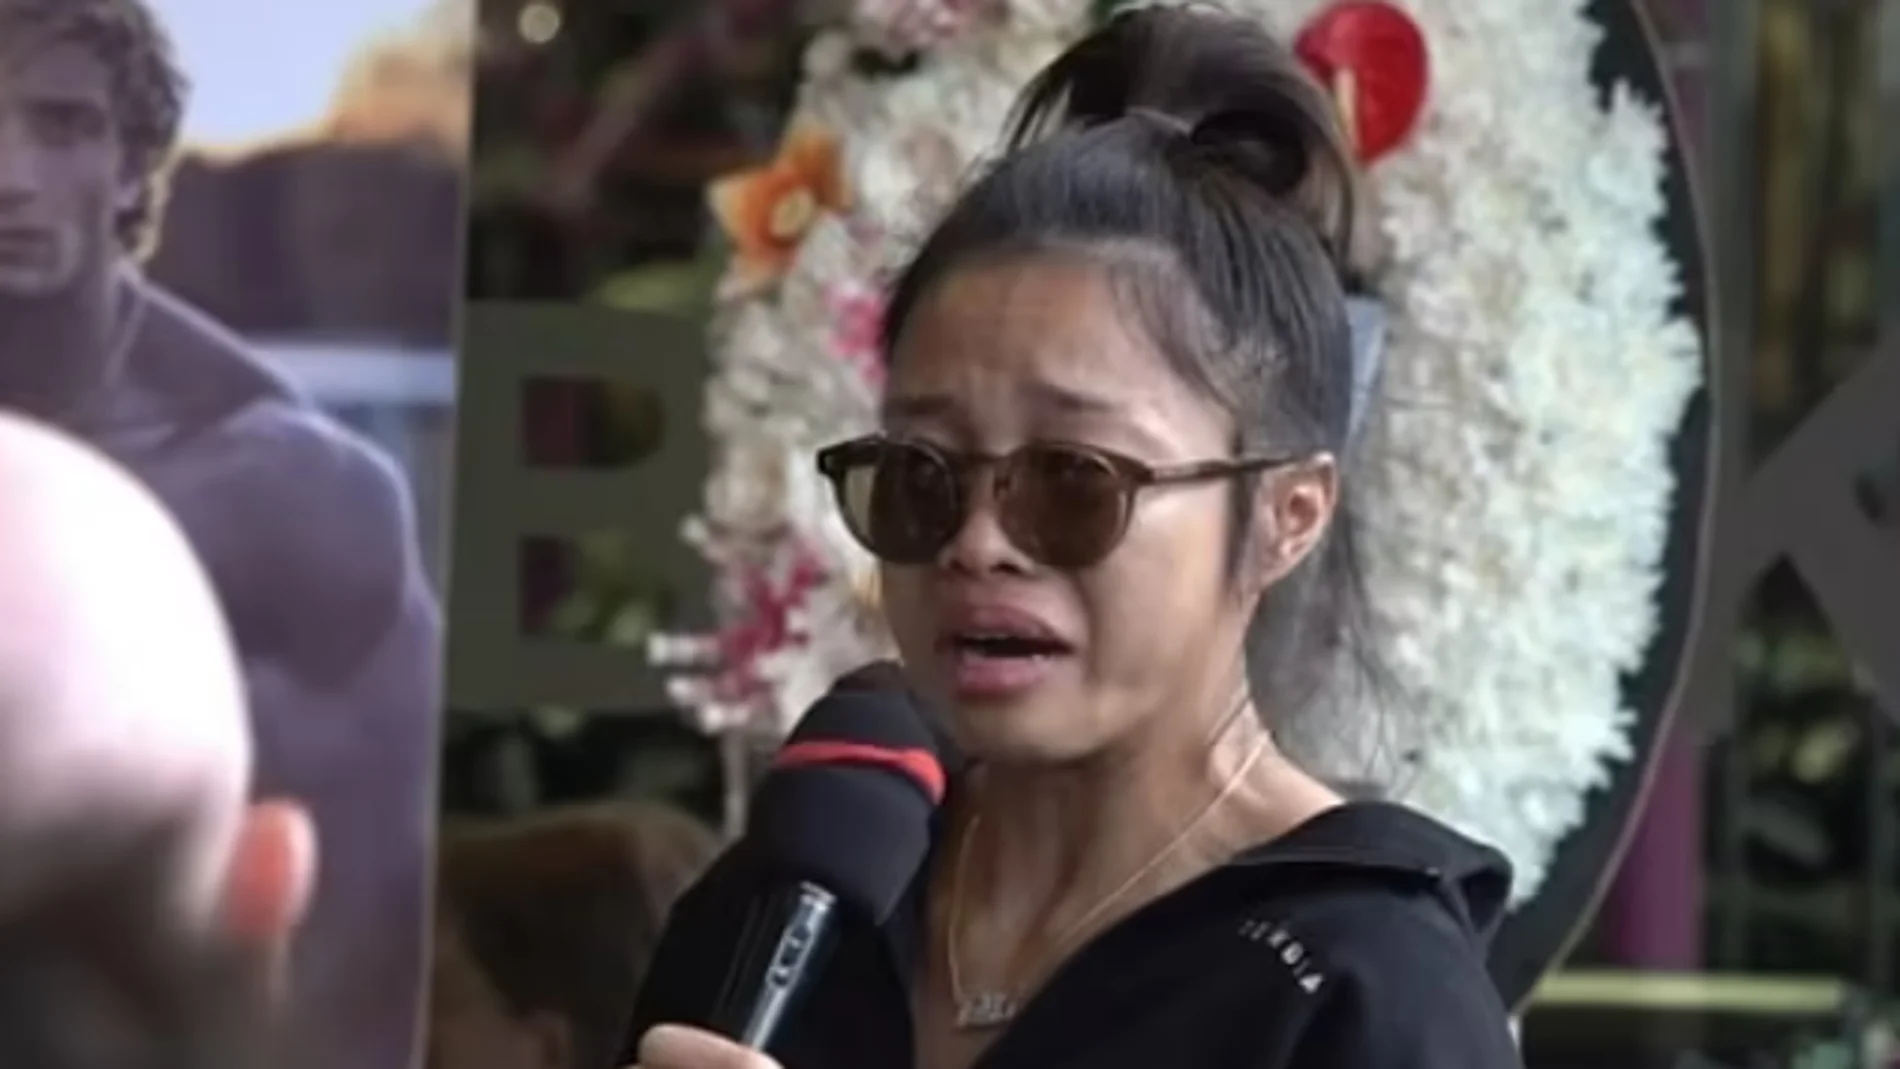 Nicha, la novia de Jo Lindner en un acto en memoria del influencer en Tailandia